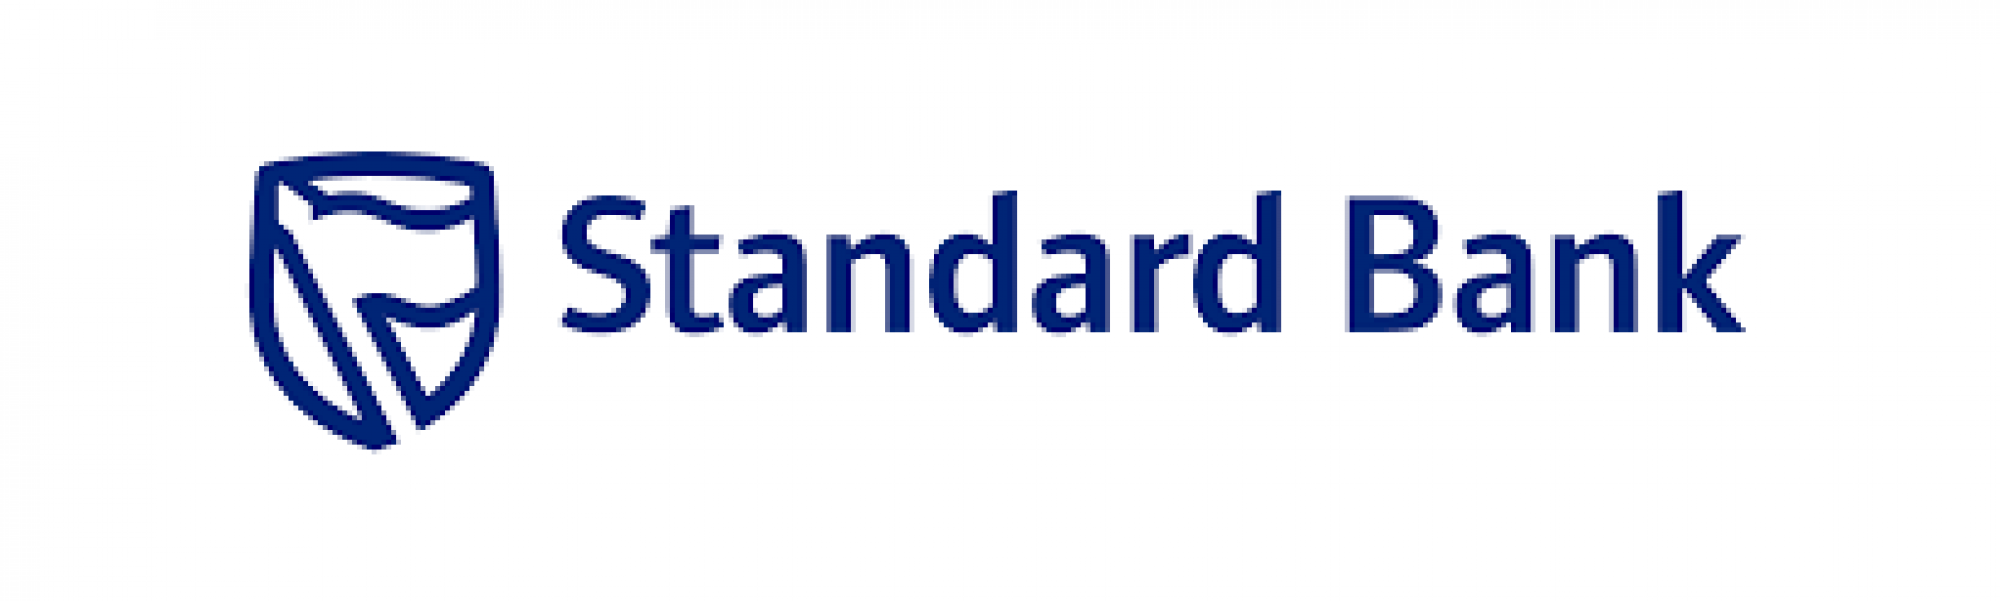 STANDARD BANK S.A